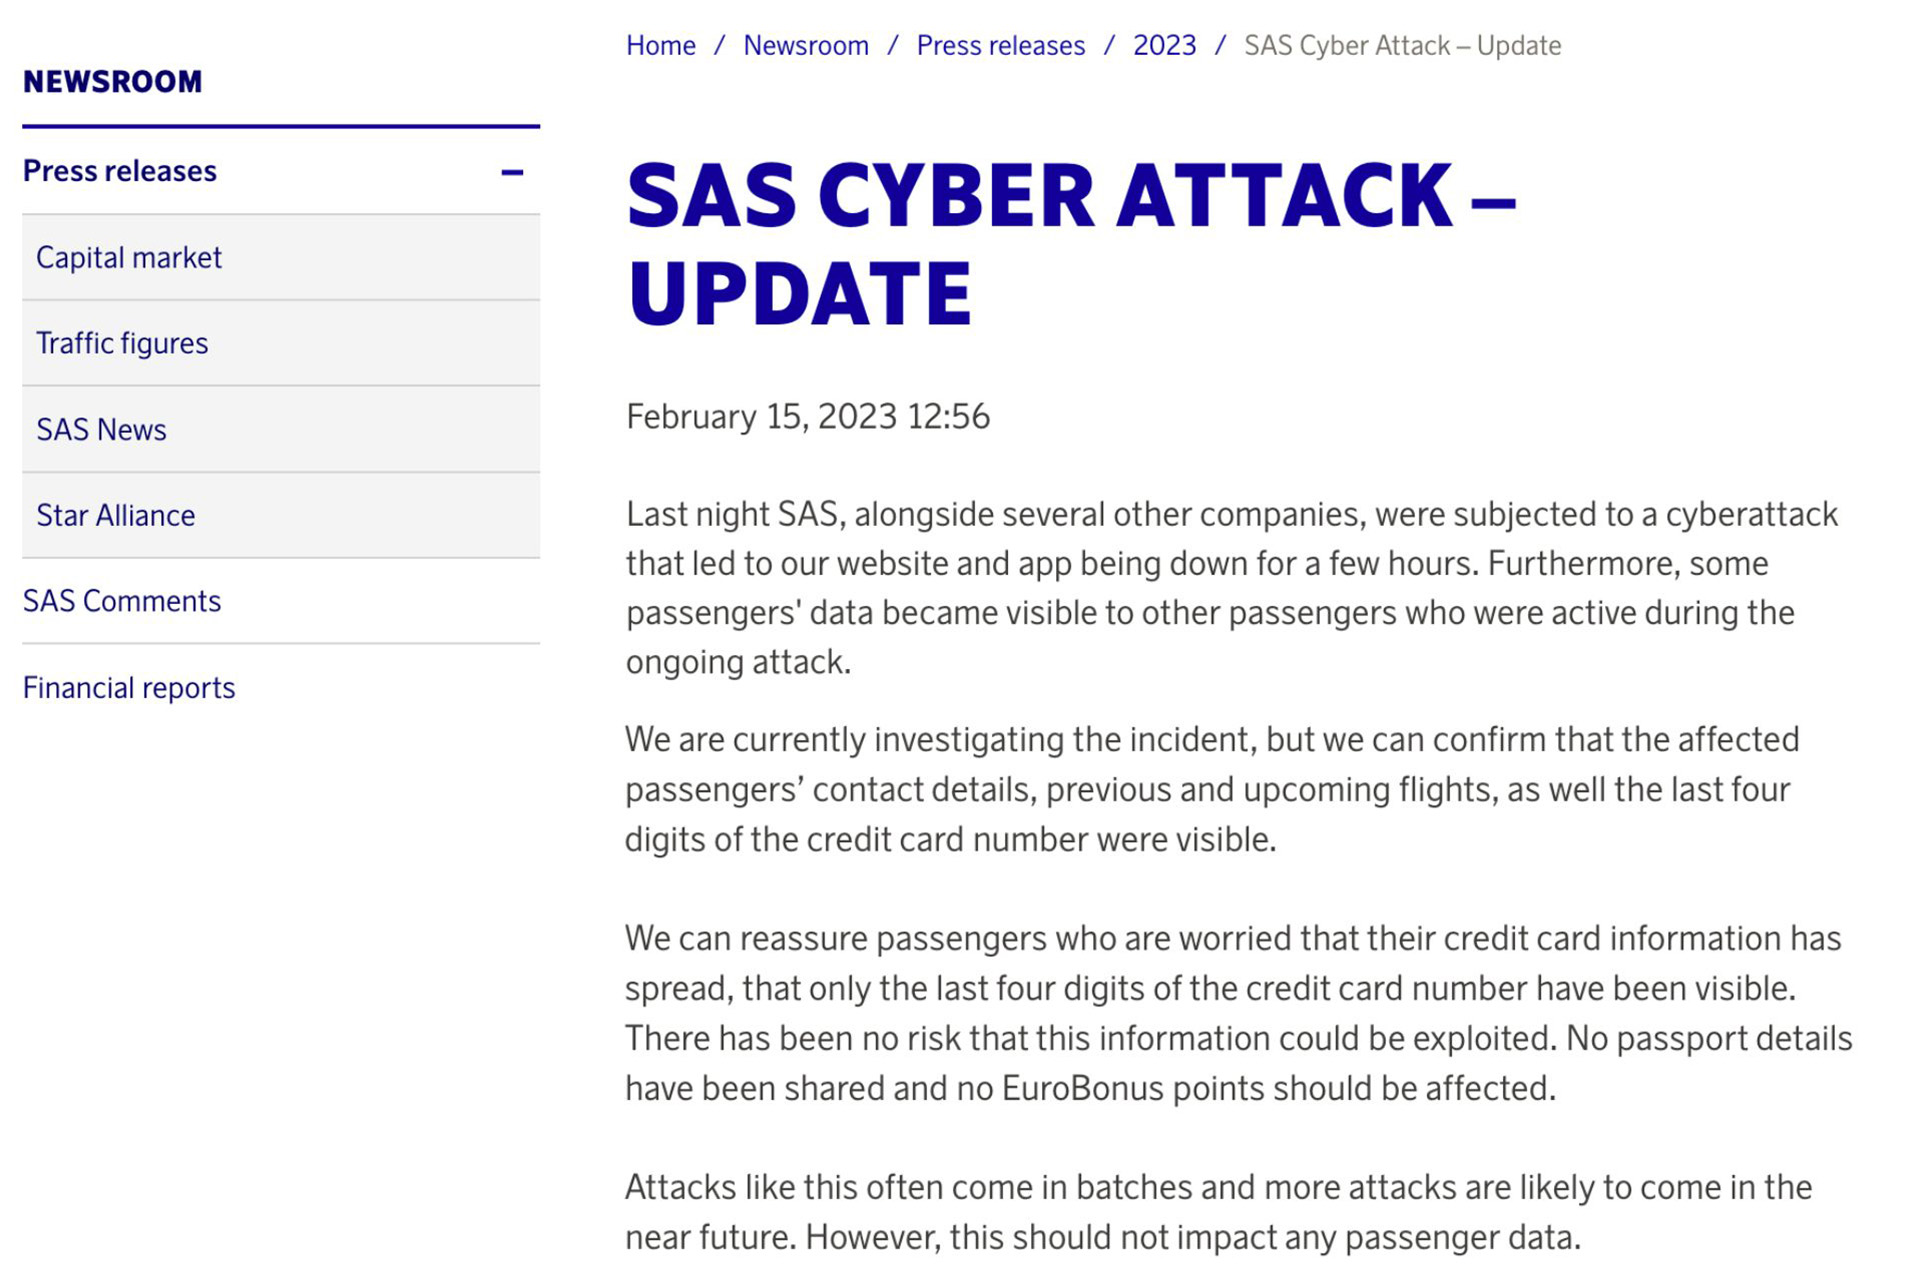 Persbericht van Scandinavian Airlines met details over de cyberaanval, waarin wordt bevestigd dat verschillende persoonsgegevens zichtbaar waren.